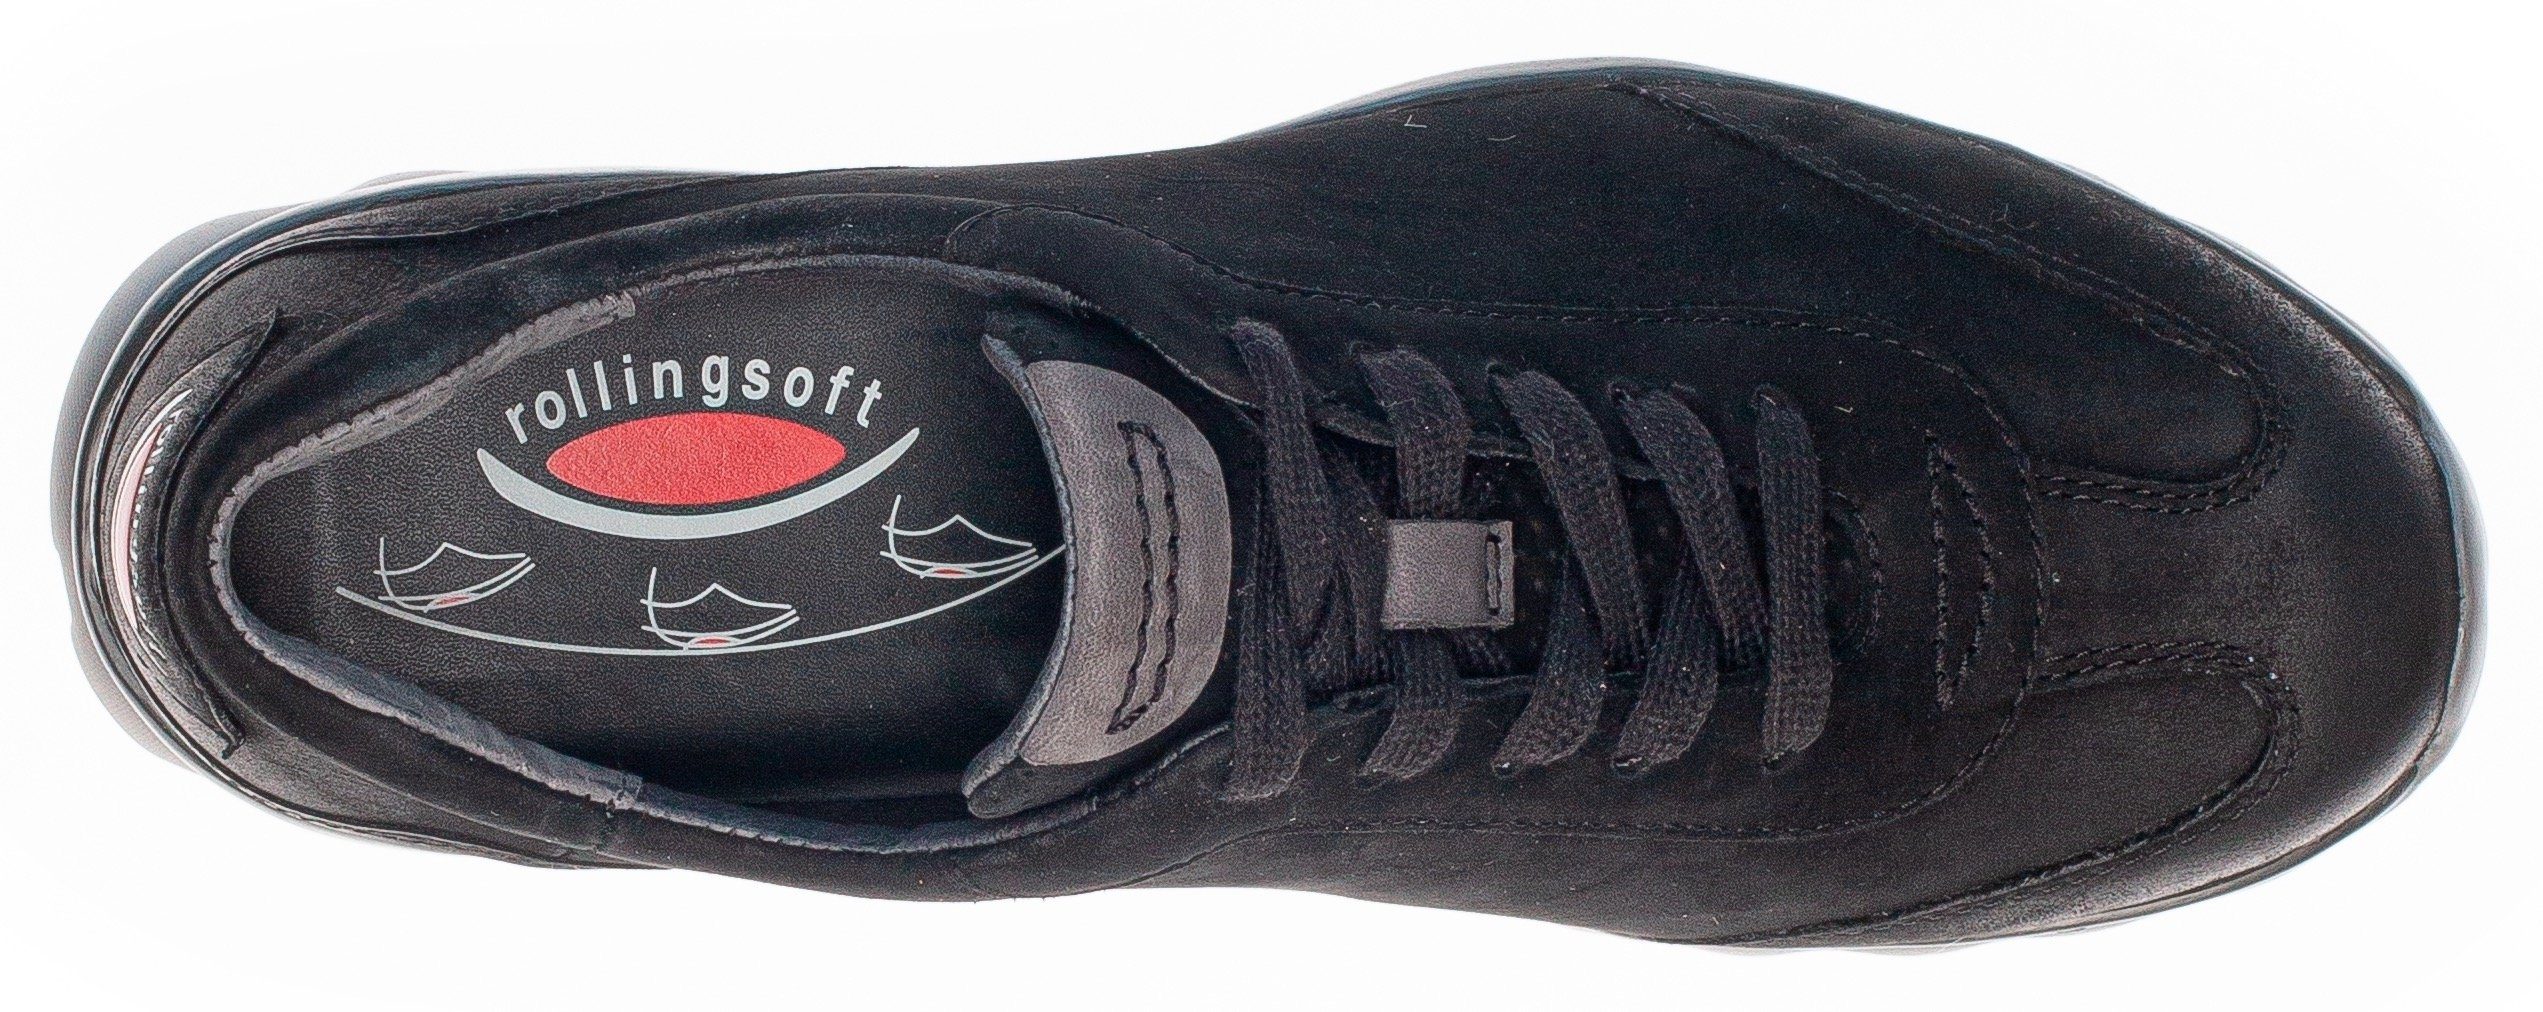 Gabor Ferse der Logoschriftzug Rollingsoft an Keilsneaker schwarz mit